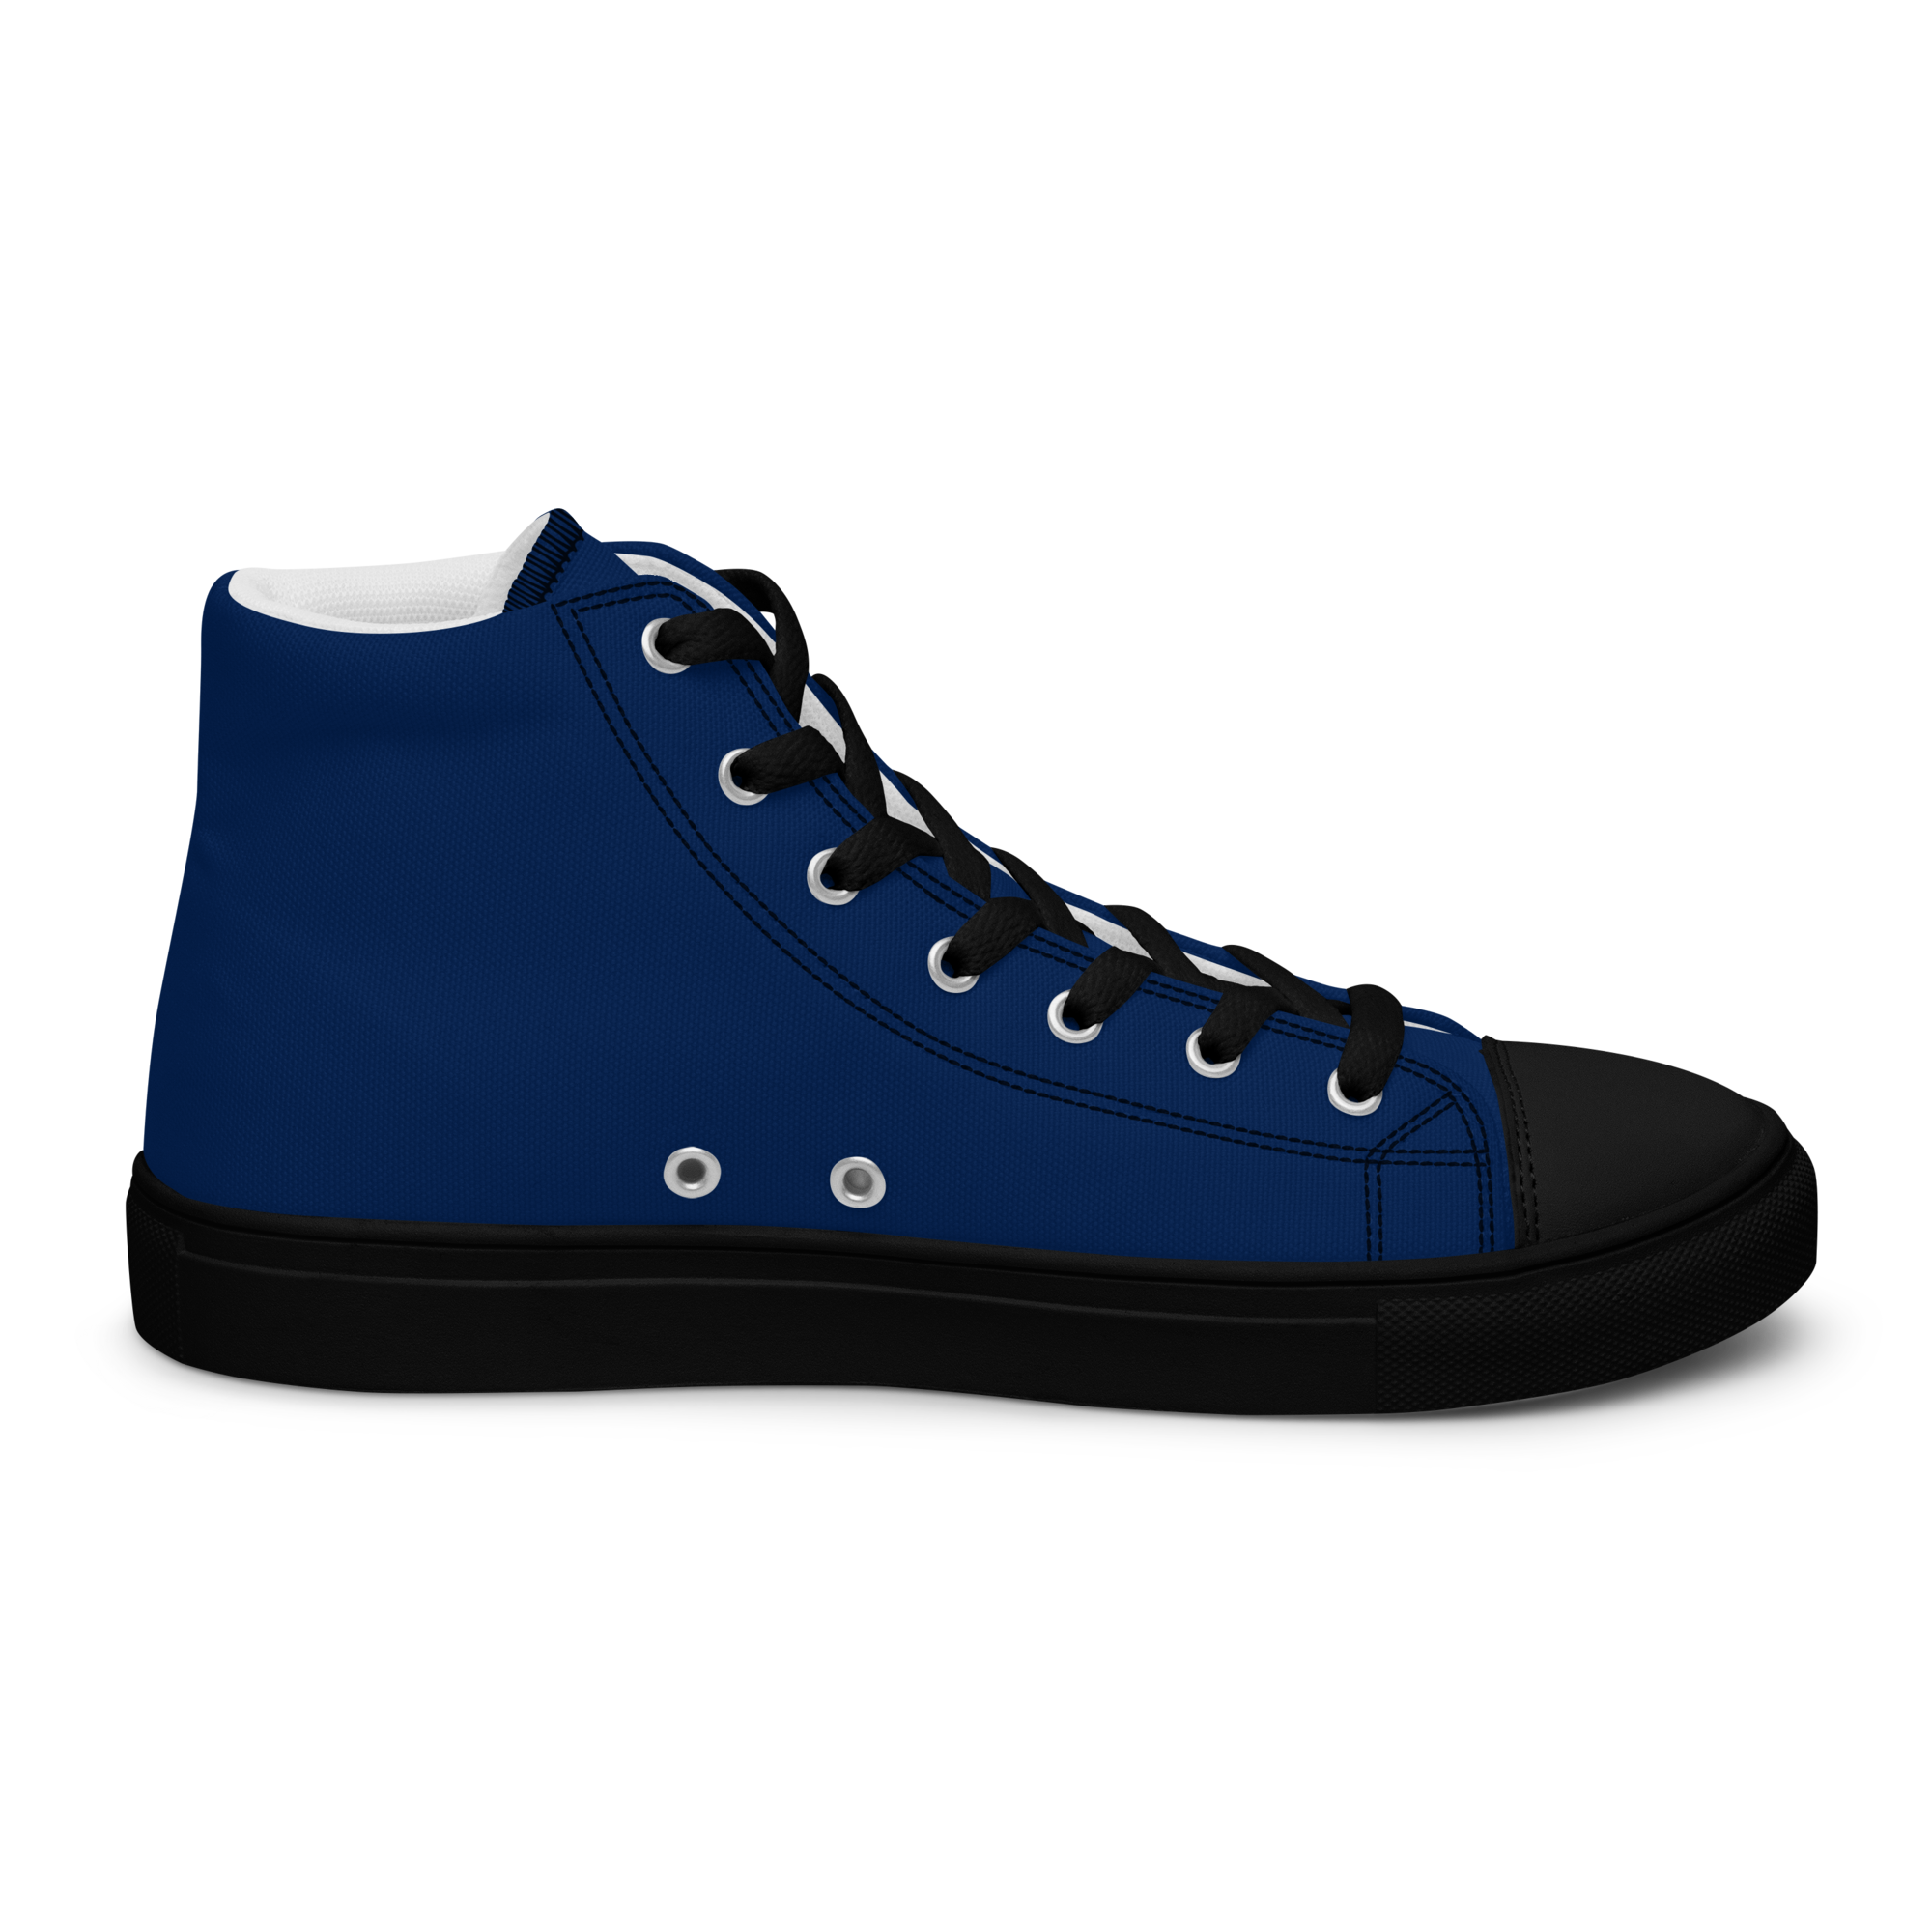 Men’s Navy Blue High Top Sneaker